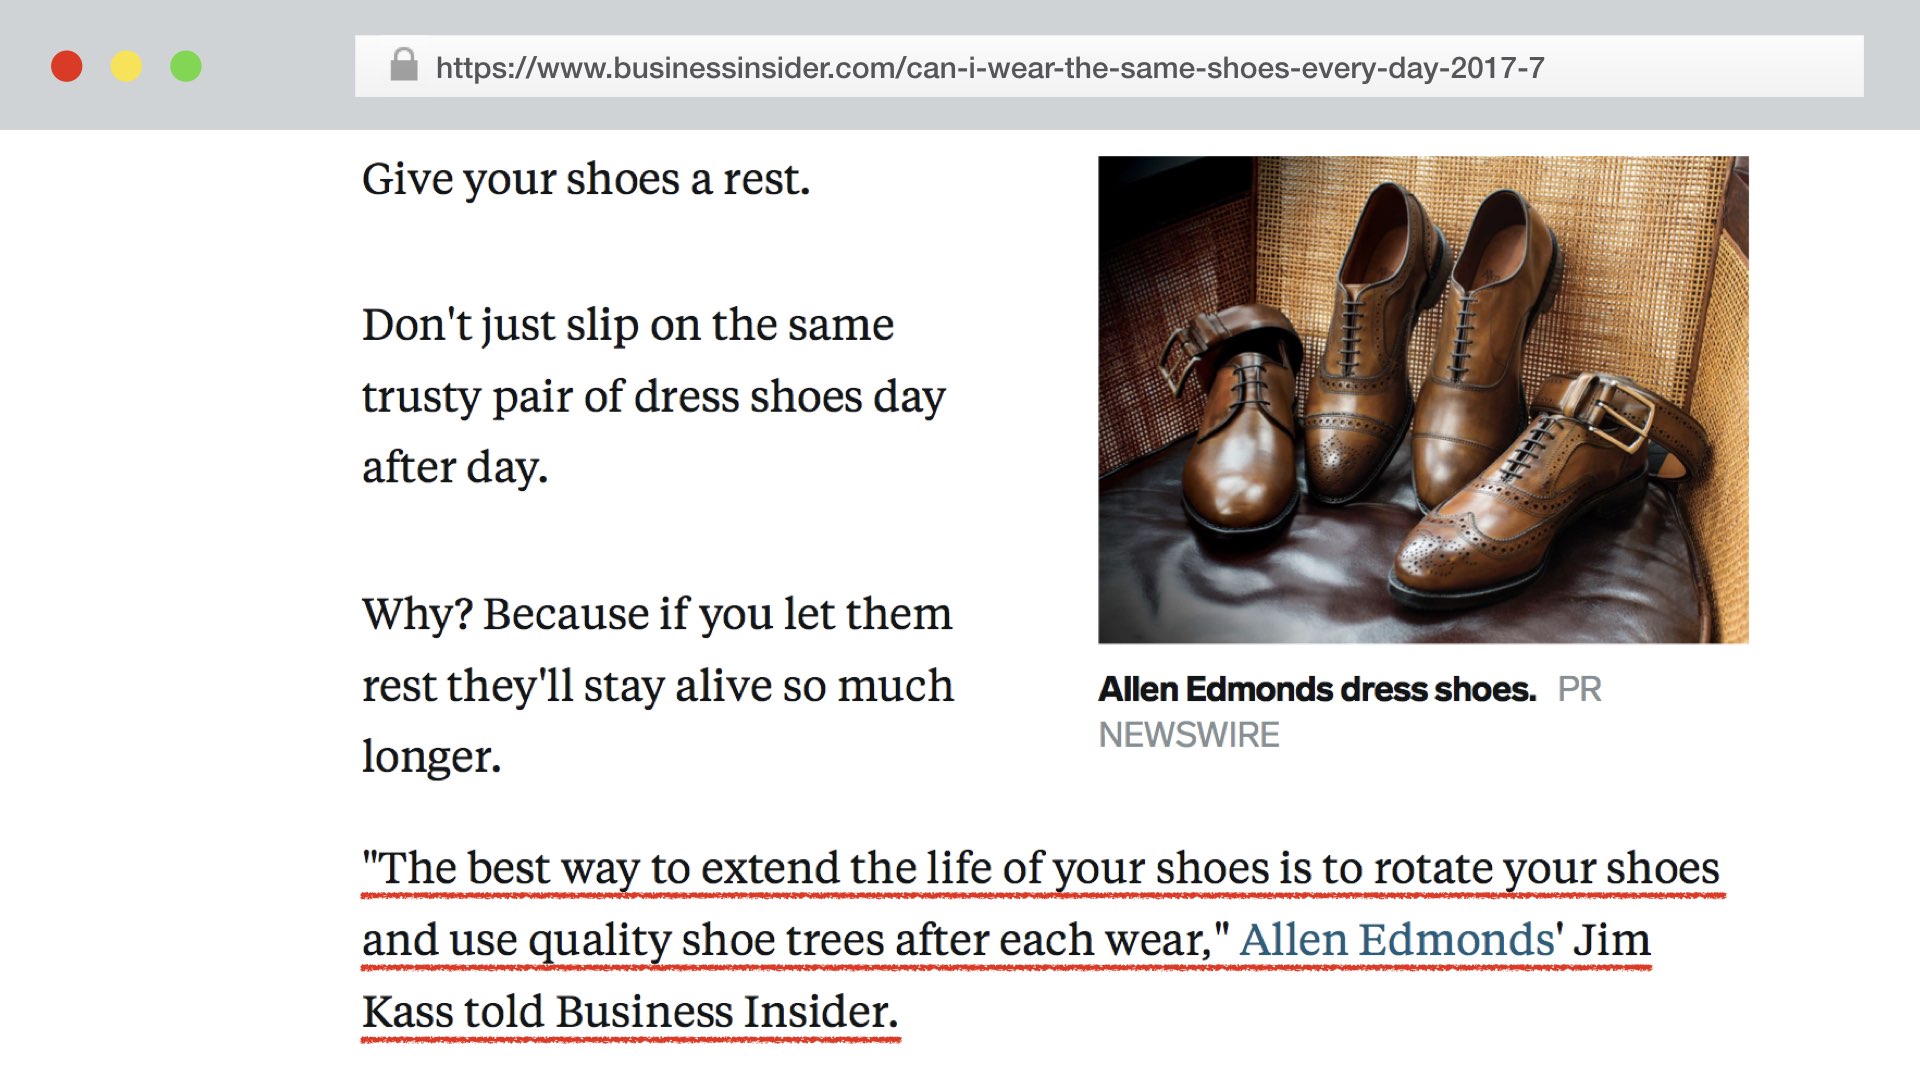 038 Allen Edmonds shoes caption